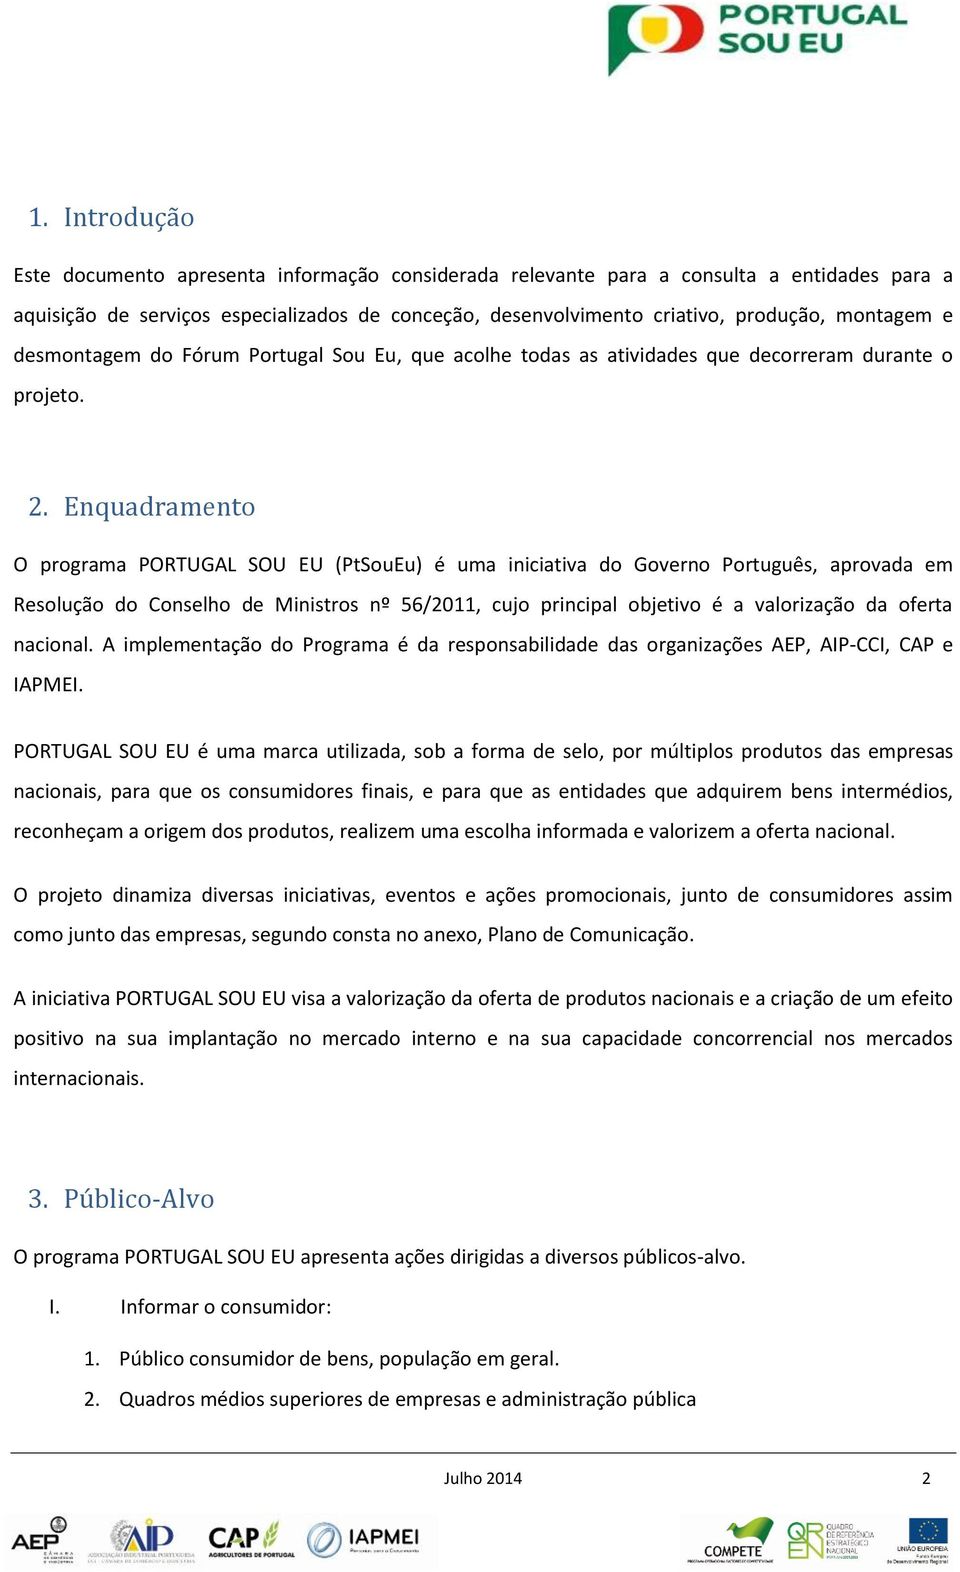 Enquadrament O prgrama PORTUGAL SOU EU (PtSuEu) é uma iniciativa d Gvern Prtuguês, aprvada em Resluçã d Cnselh de Ministrs nº 56/2011, cuj principal bjetiv é a valrizaçã da ferta nacinal.